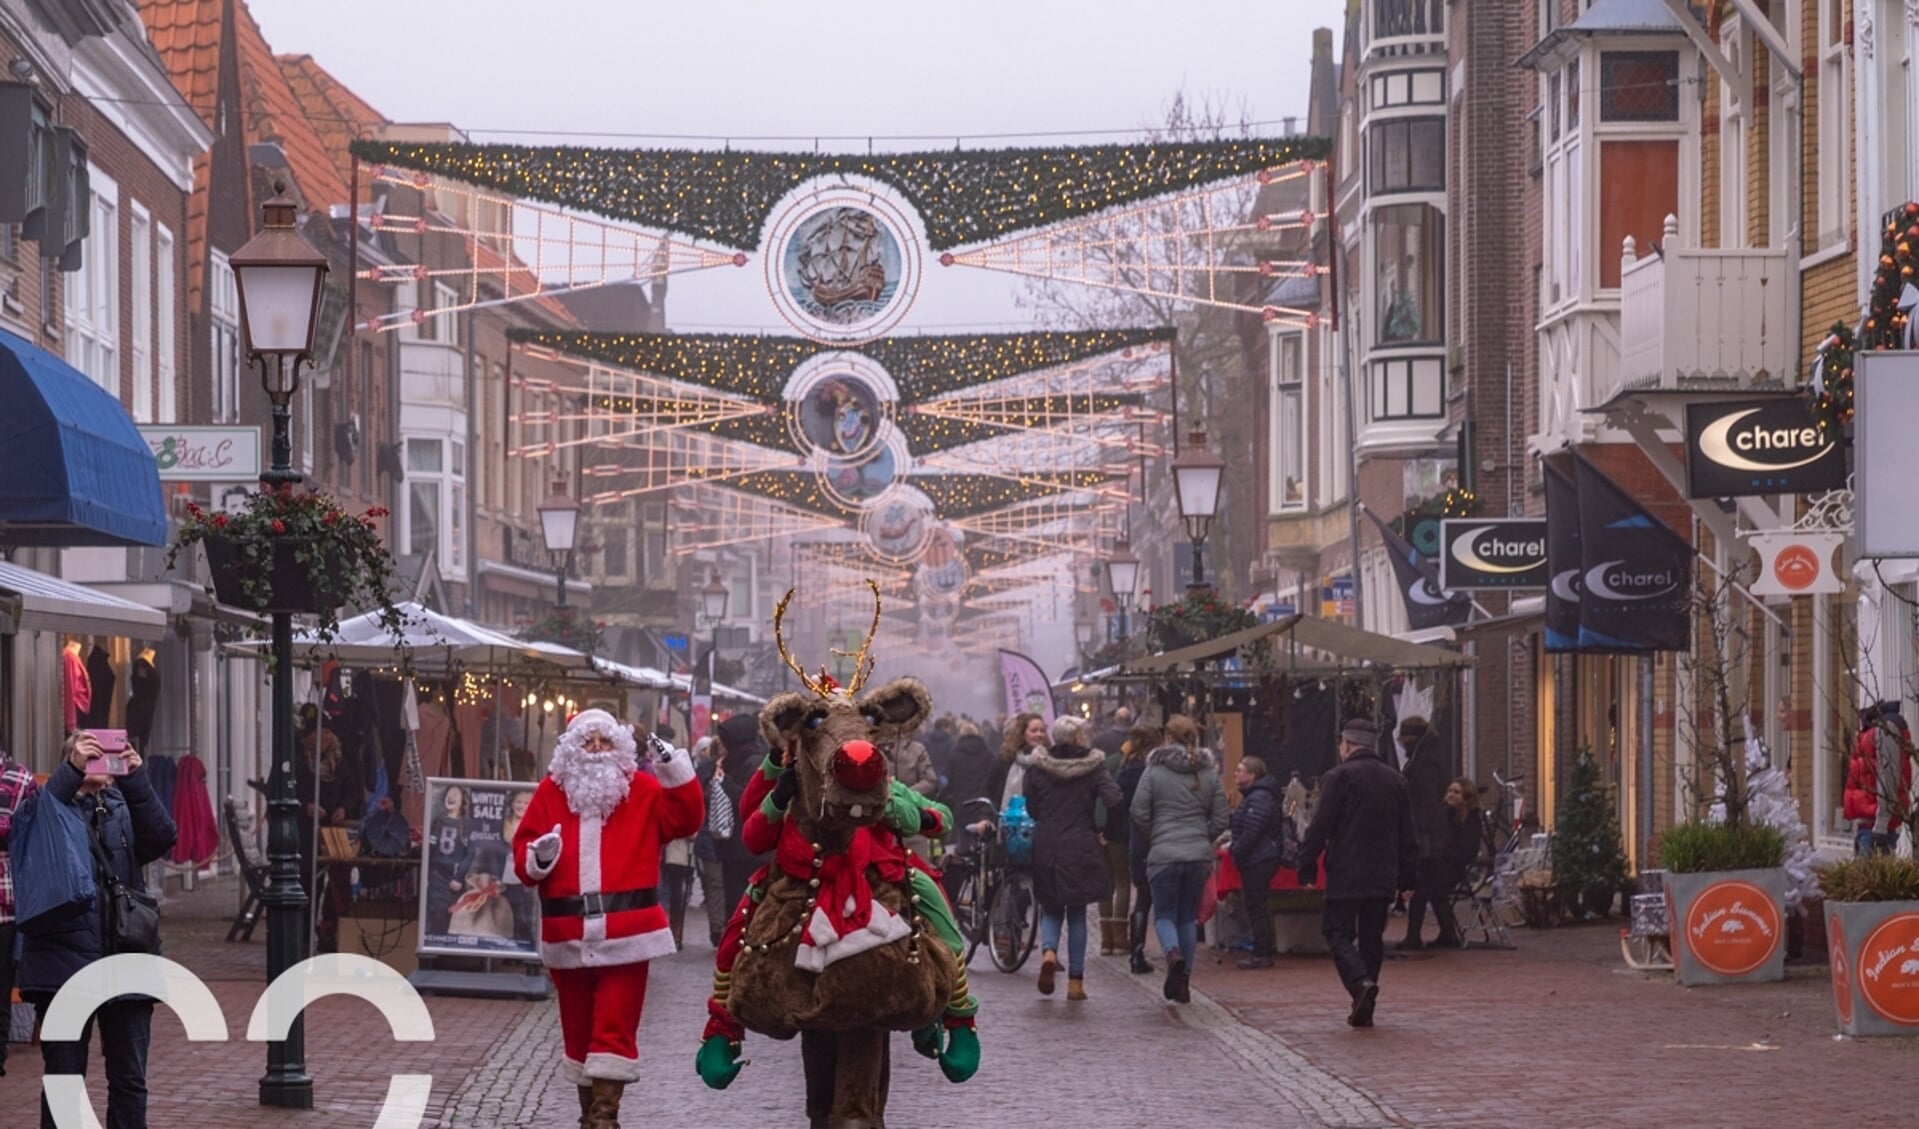 Kom shoppen, duik de horecazaken in voor een kop warme chocomel én geniet van culturele hotspots in de Hoornse binnenstad.